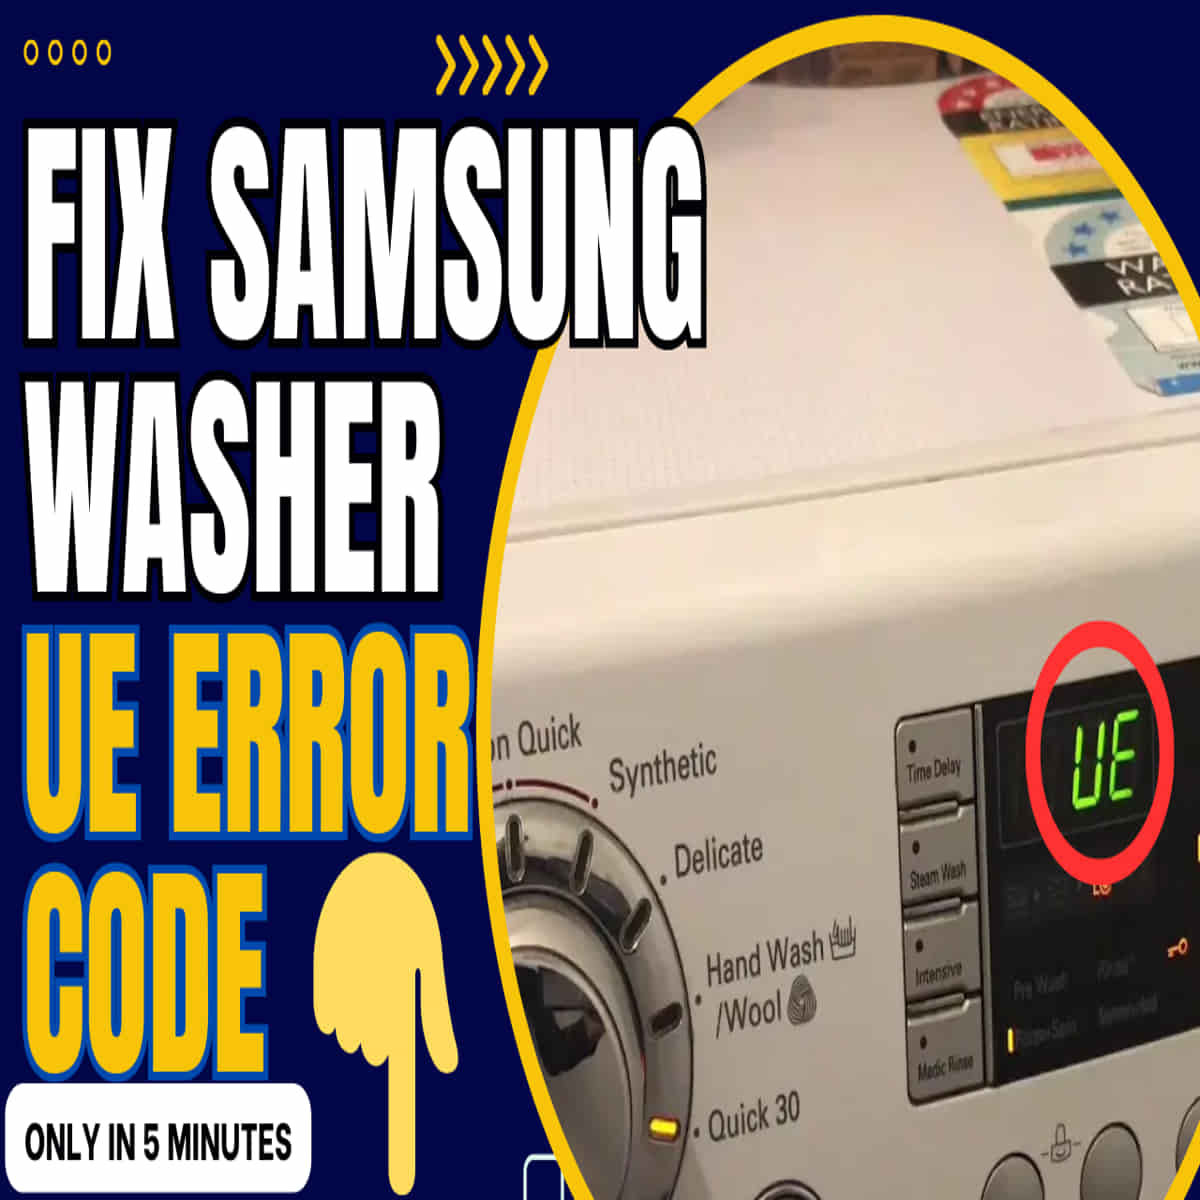 Samsung washer UE code